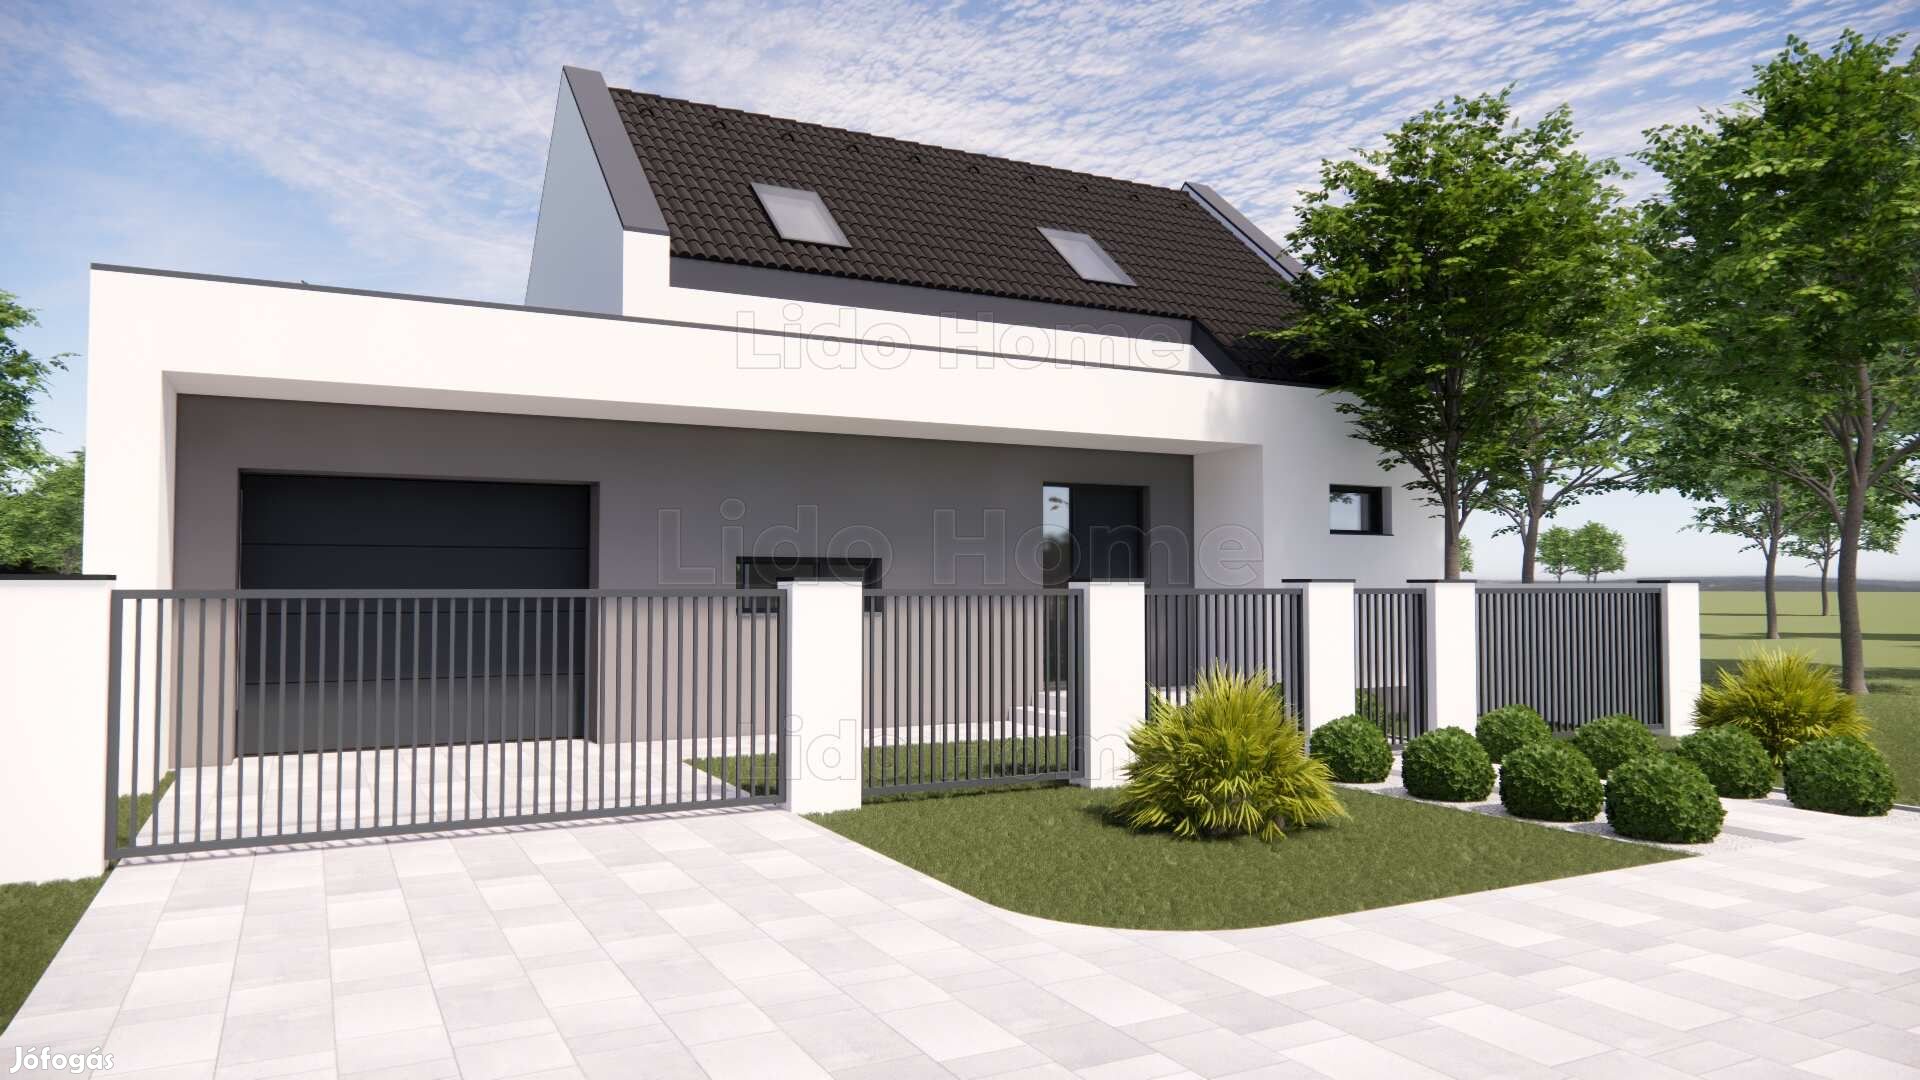 Eladó új építésű családi ház Lipóton